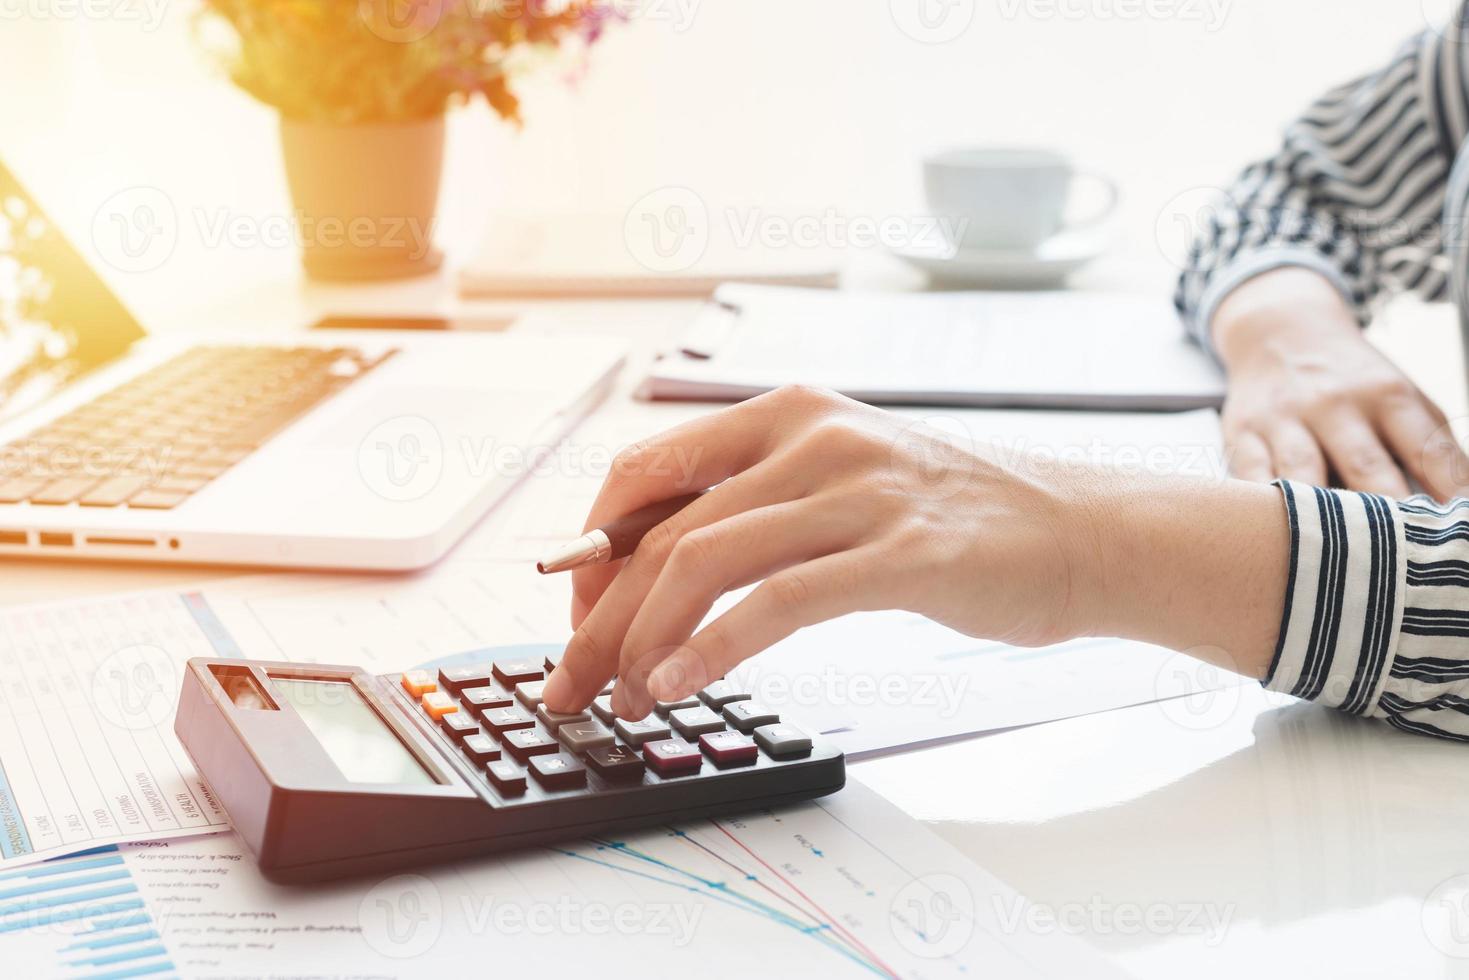 affärskvinna som använder en miniräknare och skriver anteckningar. skatter, besparingar, ekonomi och ekonomikoncept foto